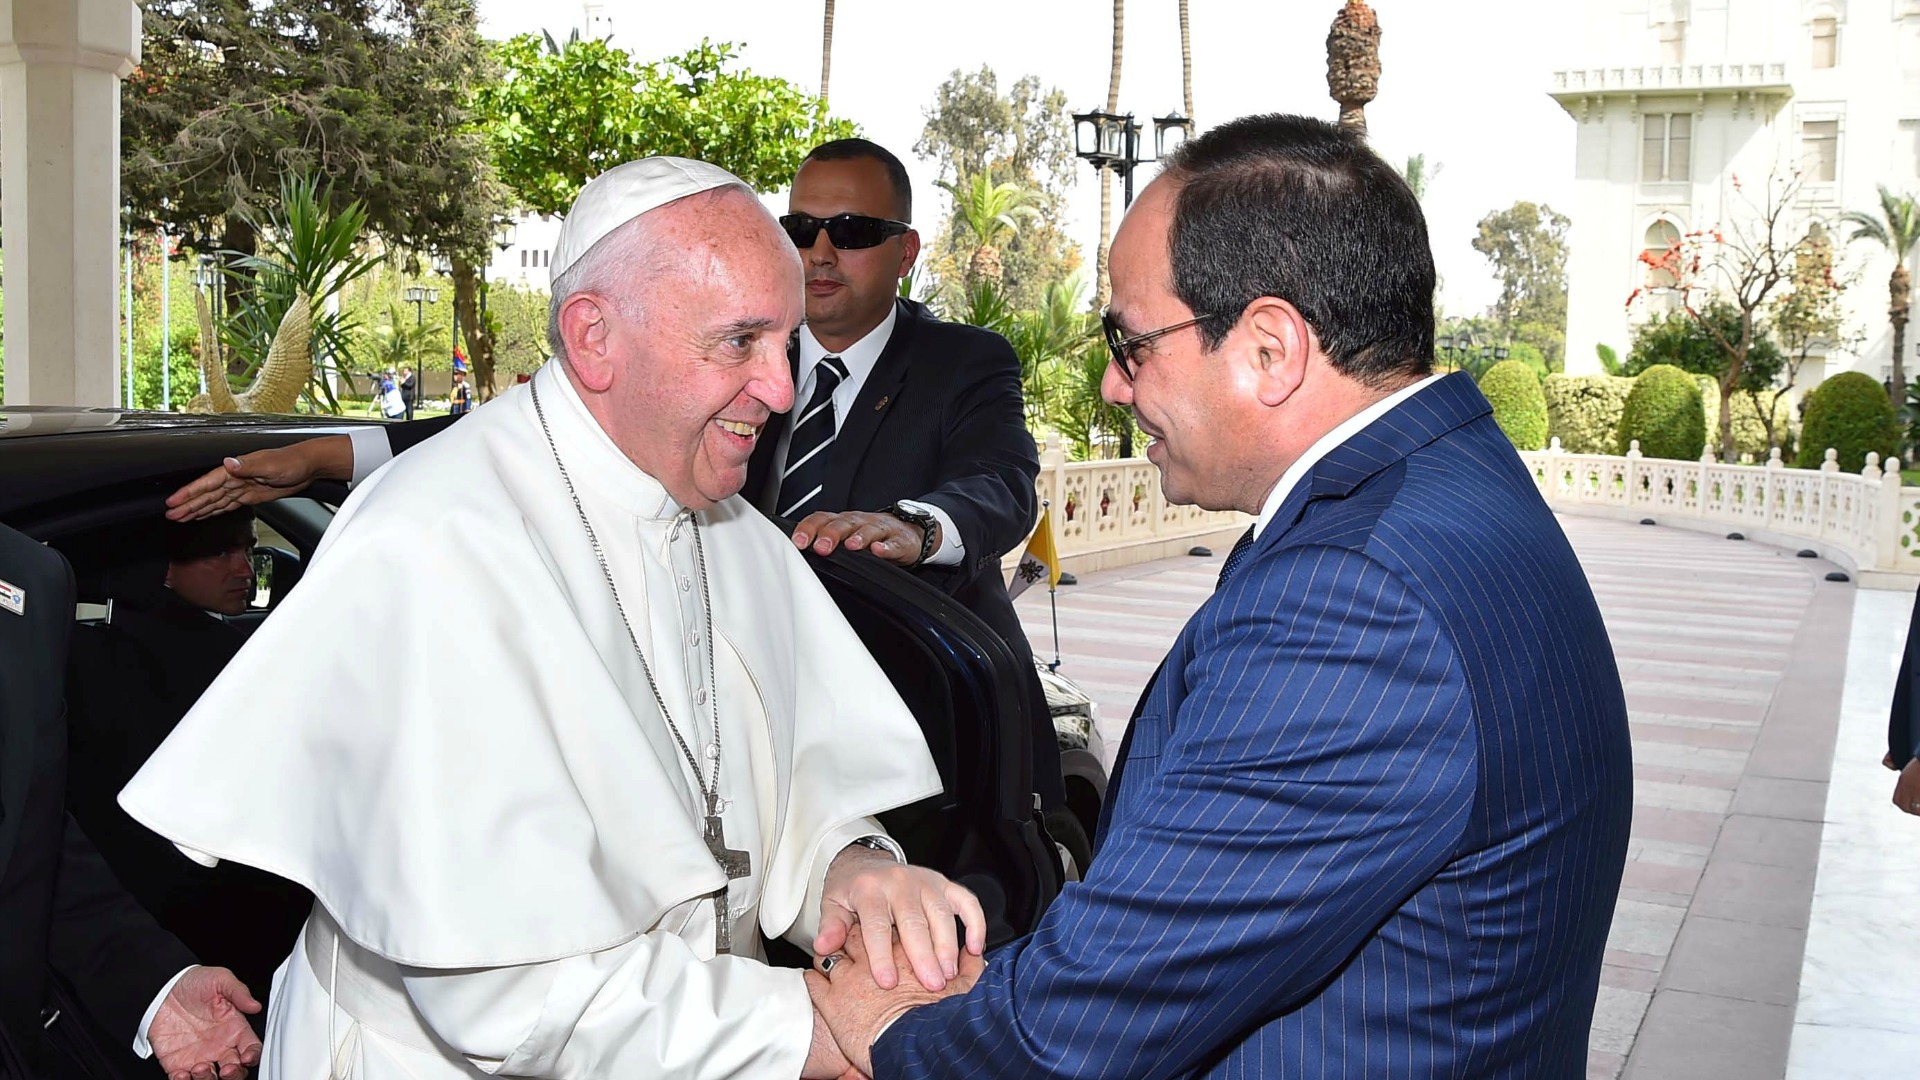 El papa lanza un mensaje de reconciliación entre las religiones en Egipto